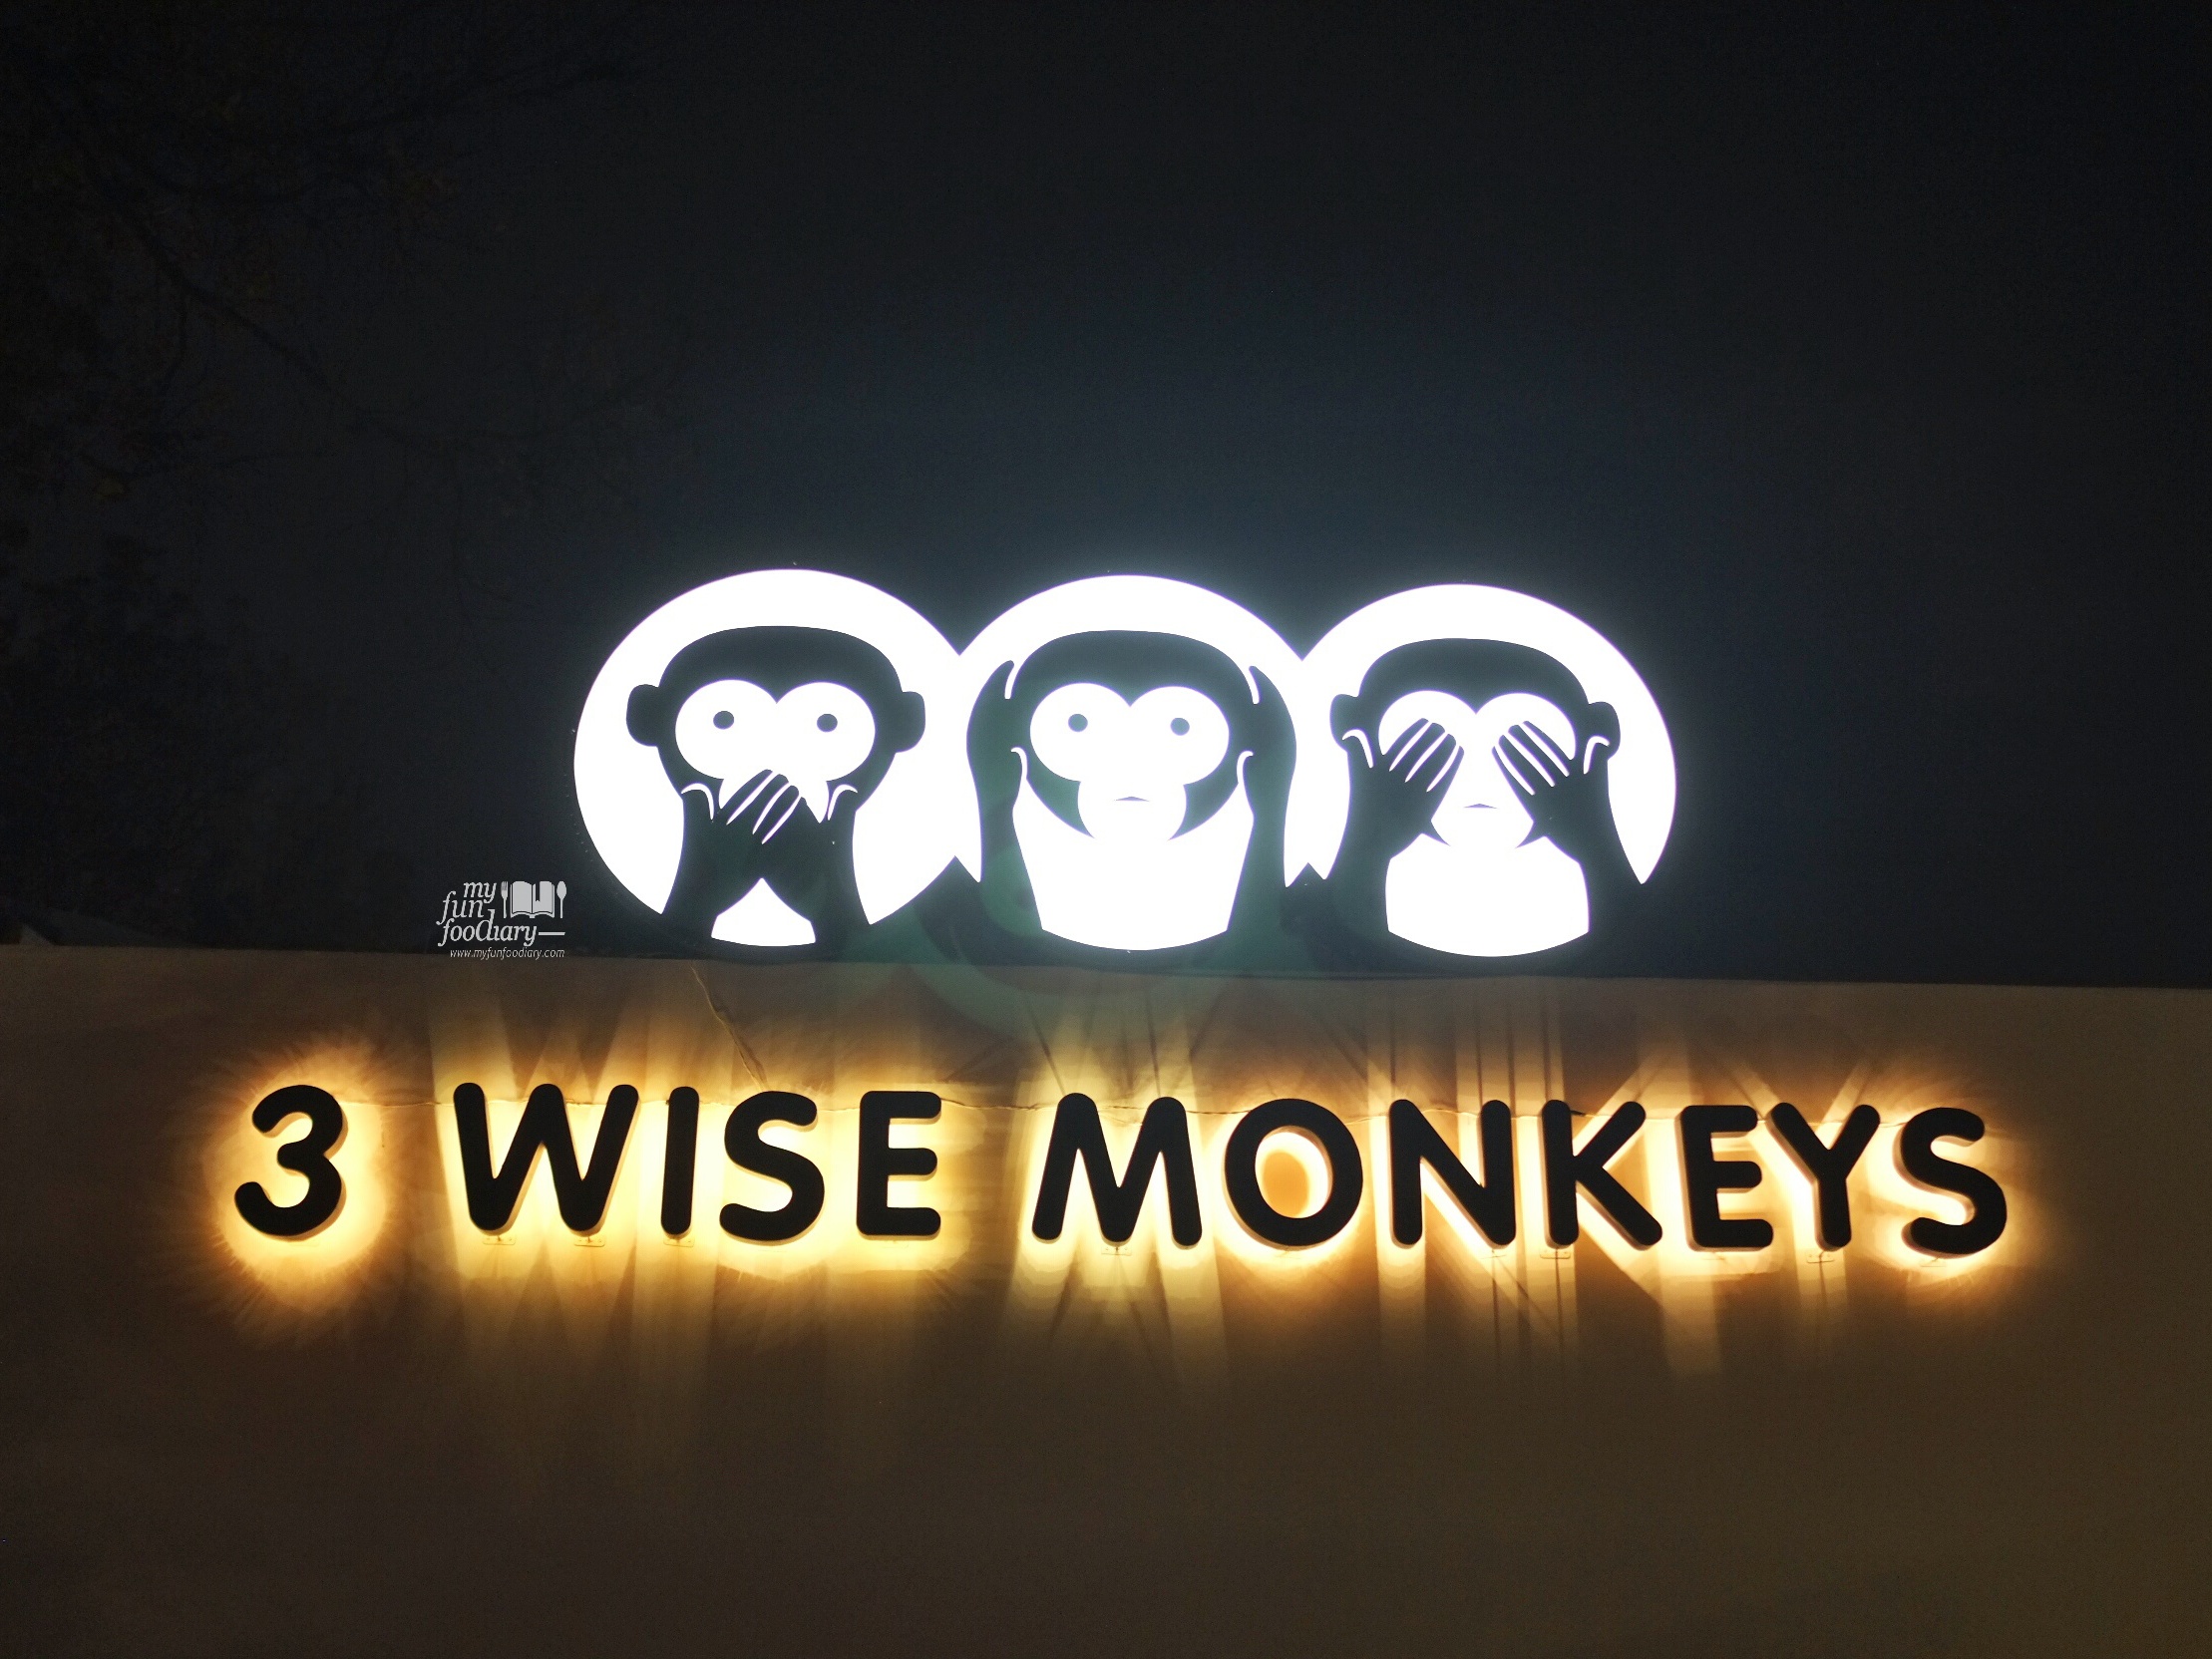 3 Wise Monkeys Signboard by Myfunfoodiary